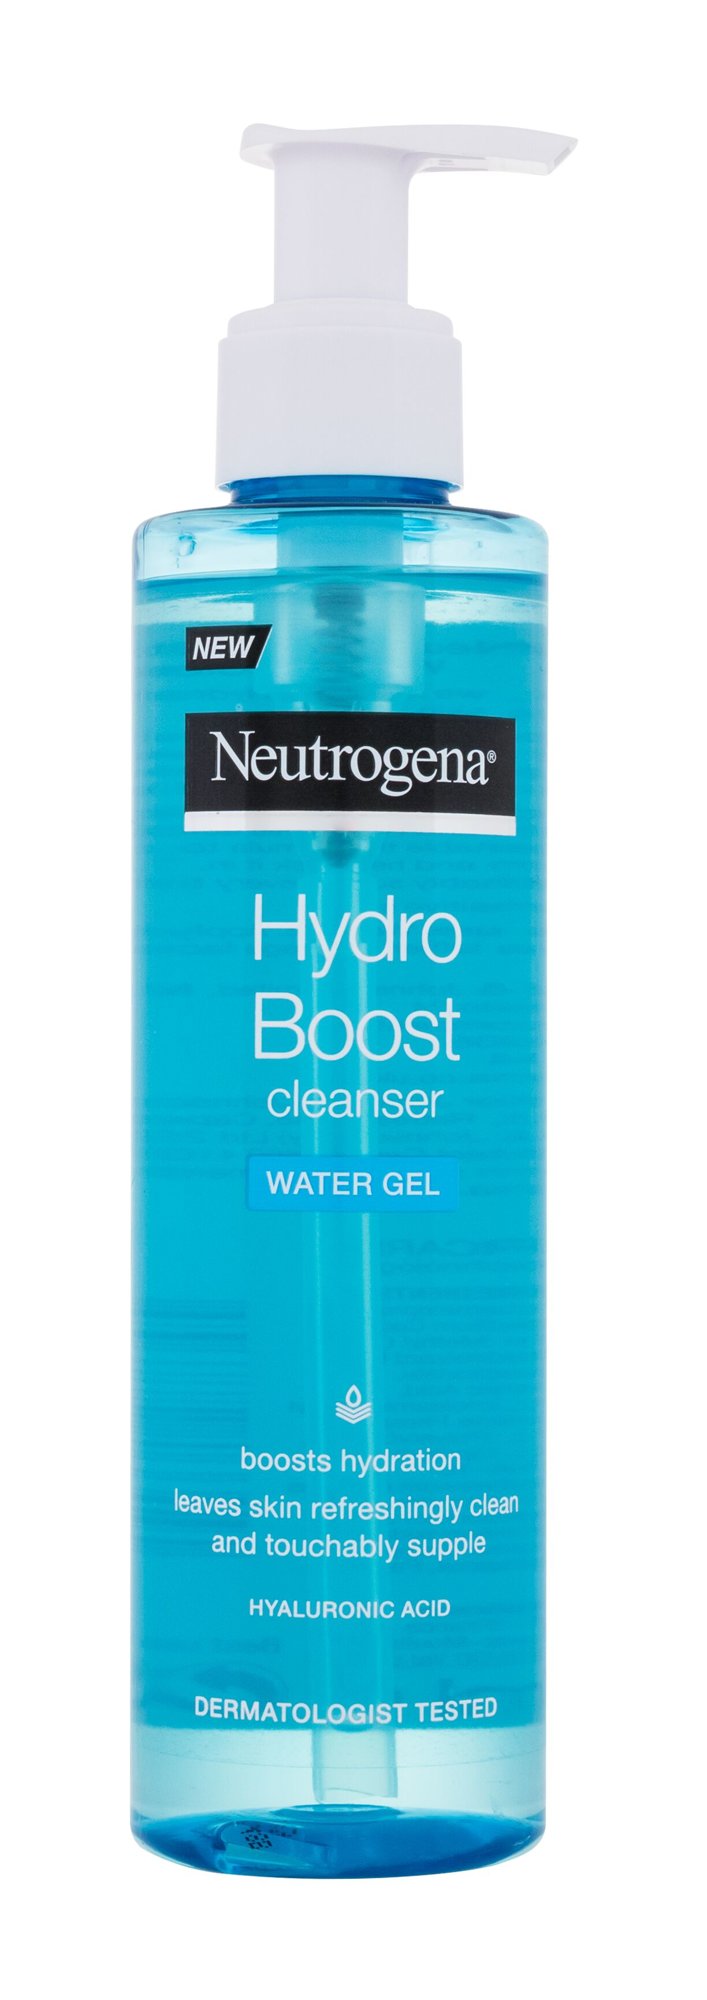 Neutrogena Hydro Boost Water Gel Cleanser 200ml veido gelis